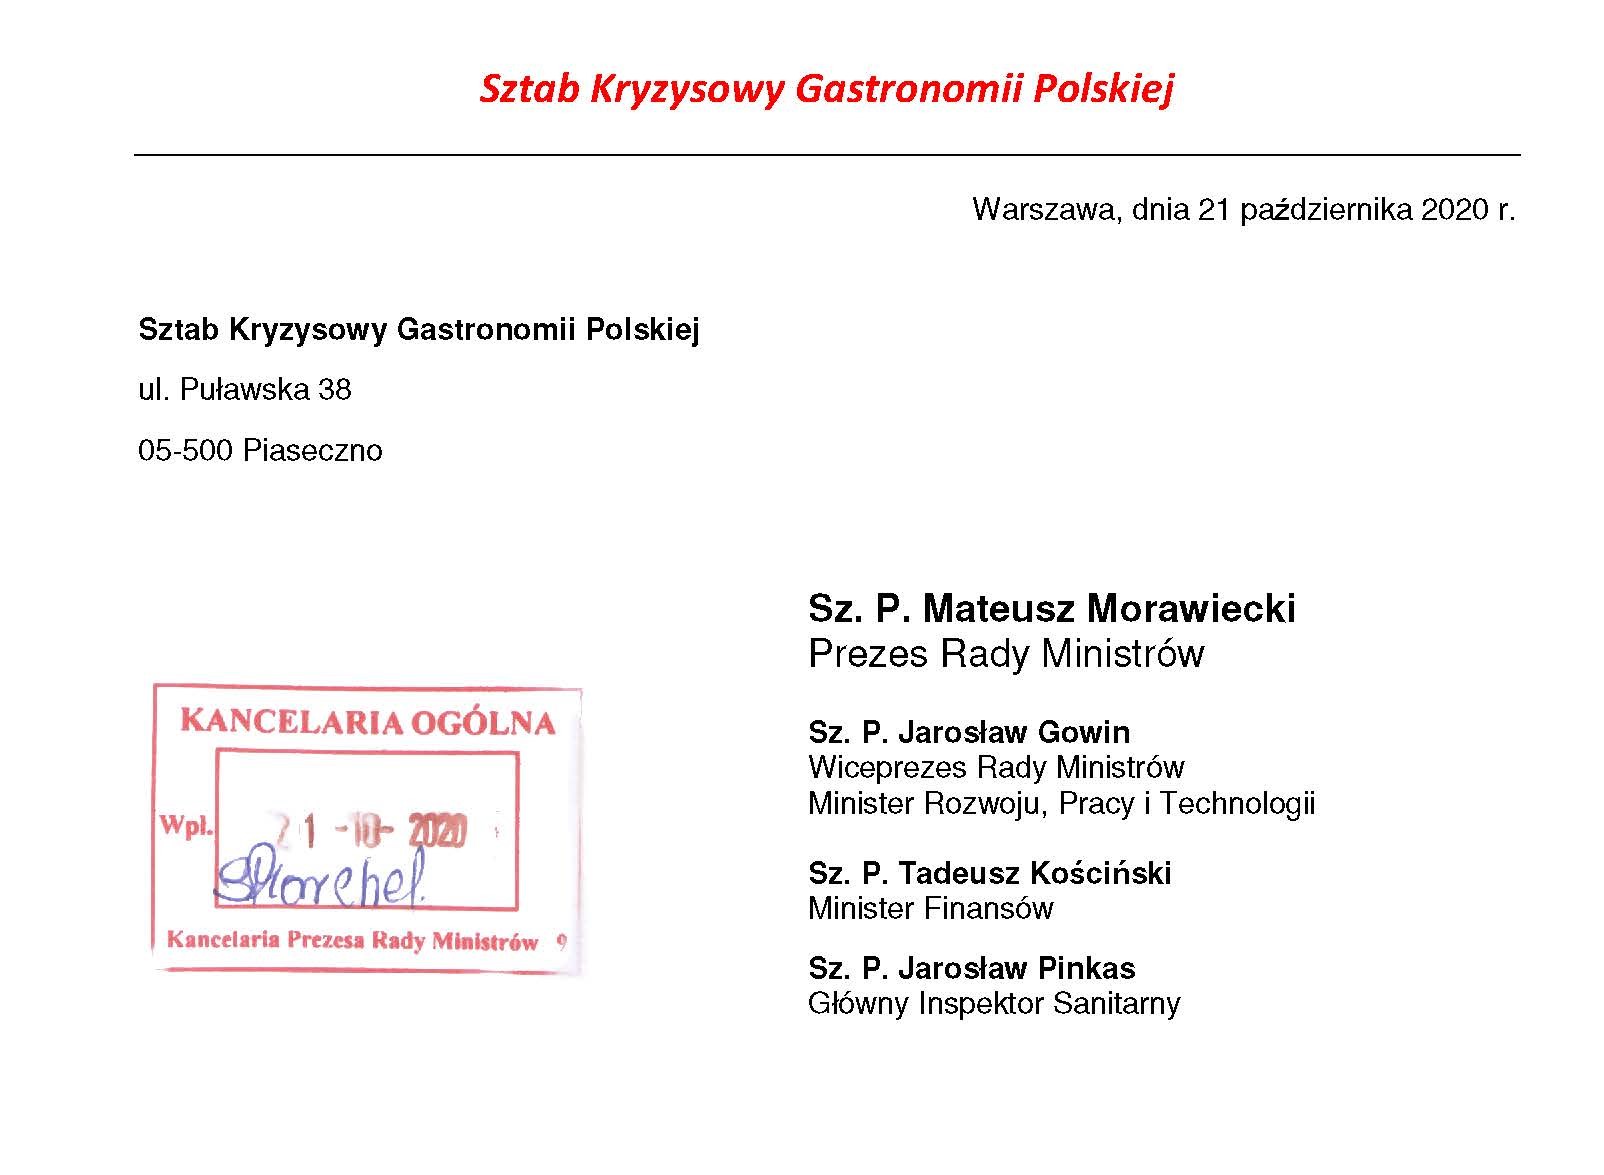 Sztab Kryzysowy Gastronomii Polskiej  zwraca się o pomoc do rządu